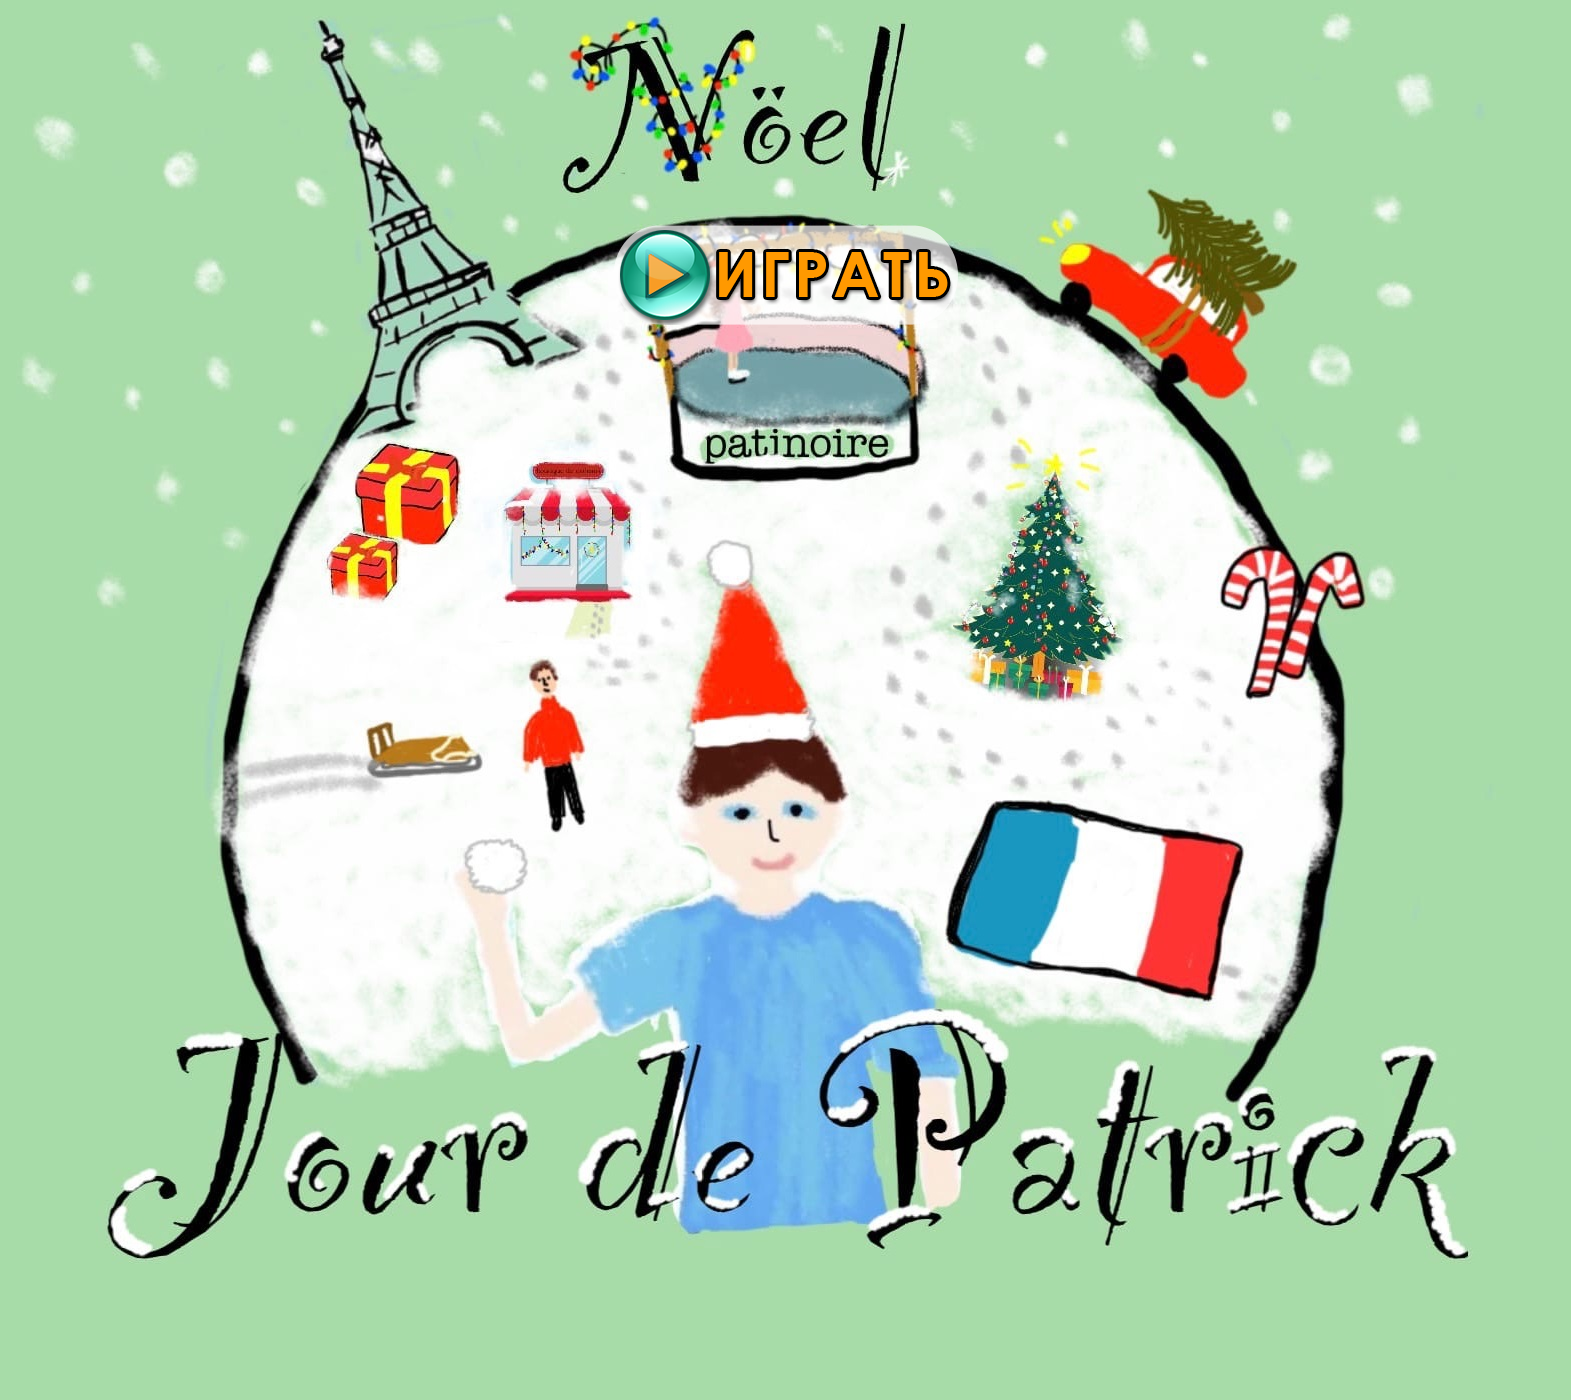 Jour de Patrick - Noеl - новый текстовый квест от justdashka. Играть онлайн.